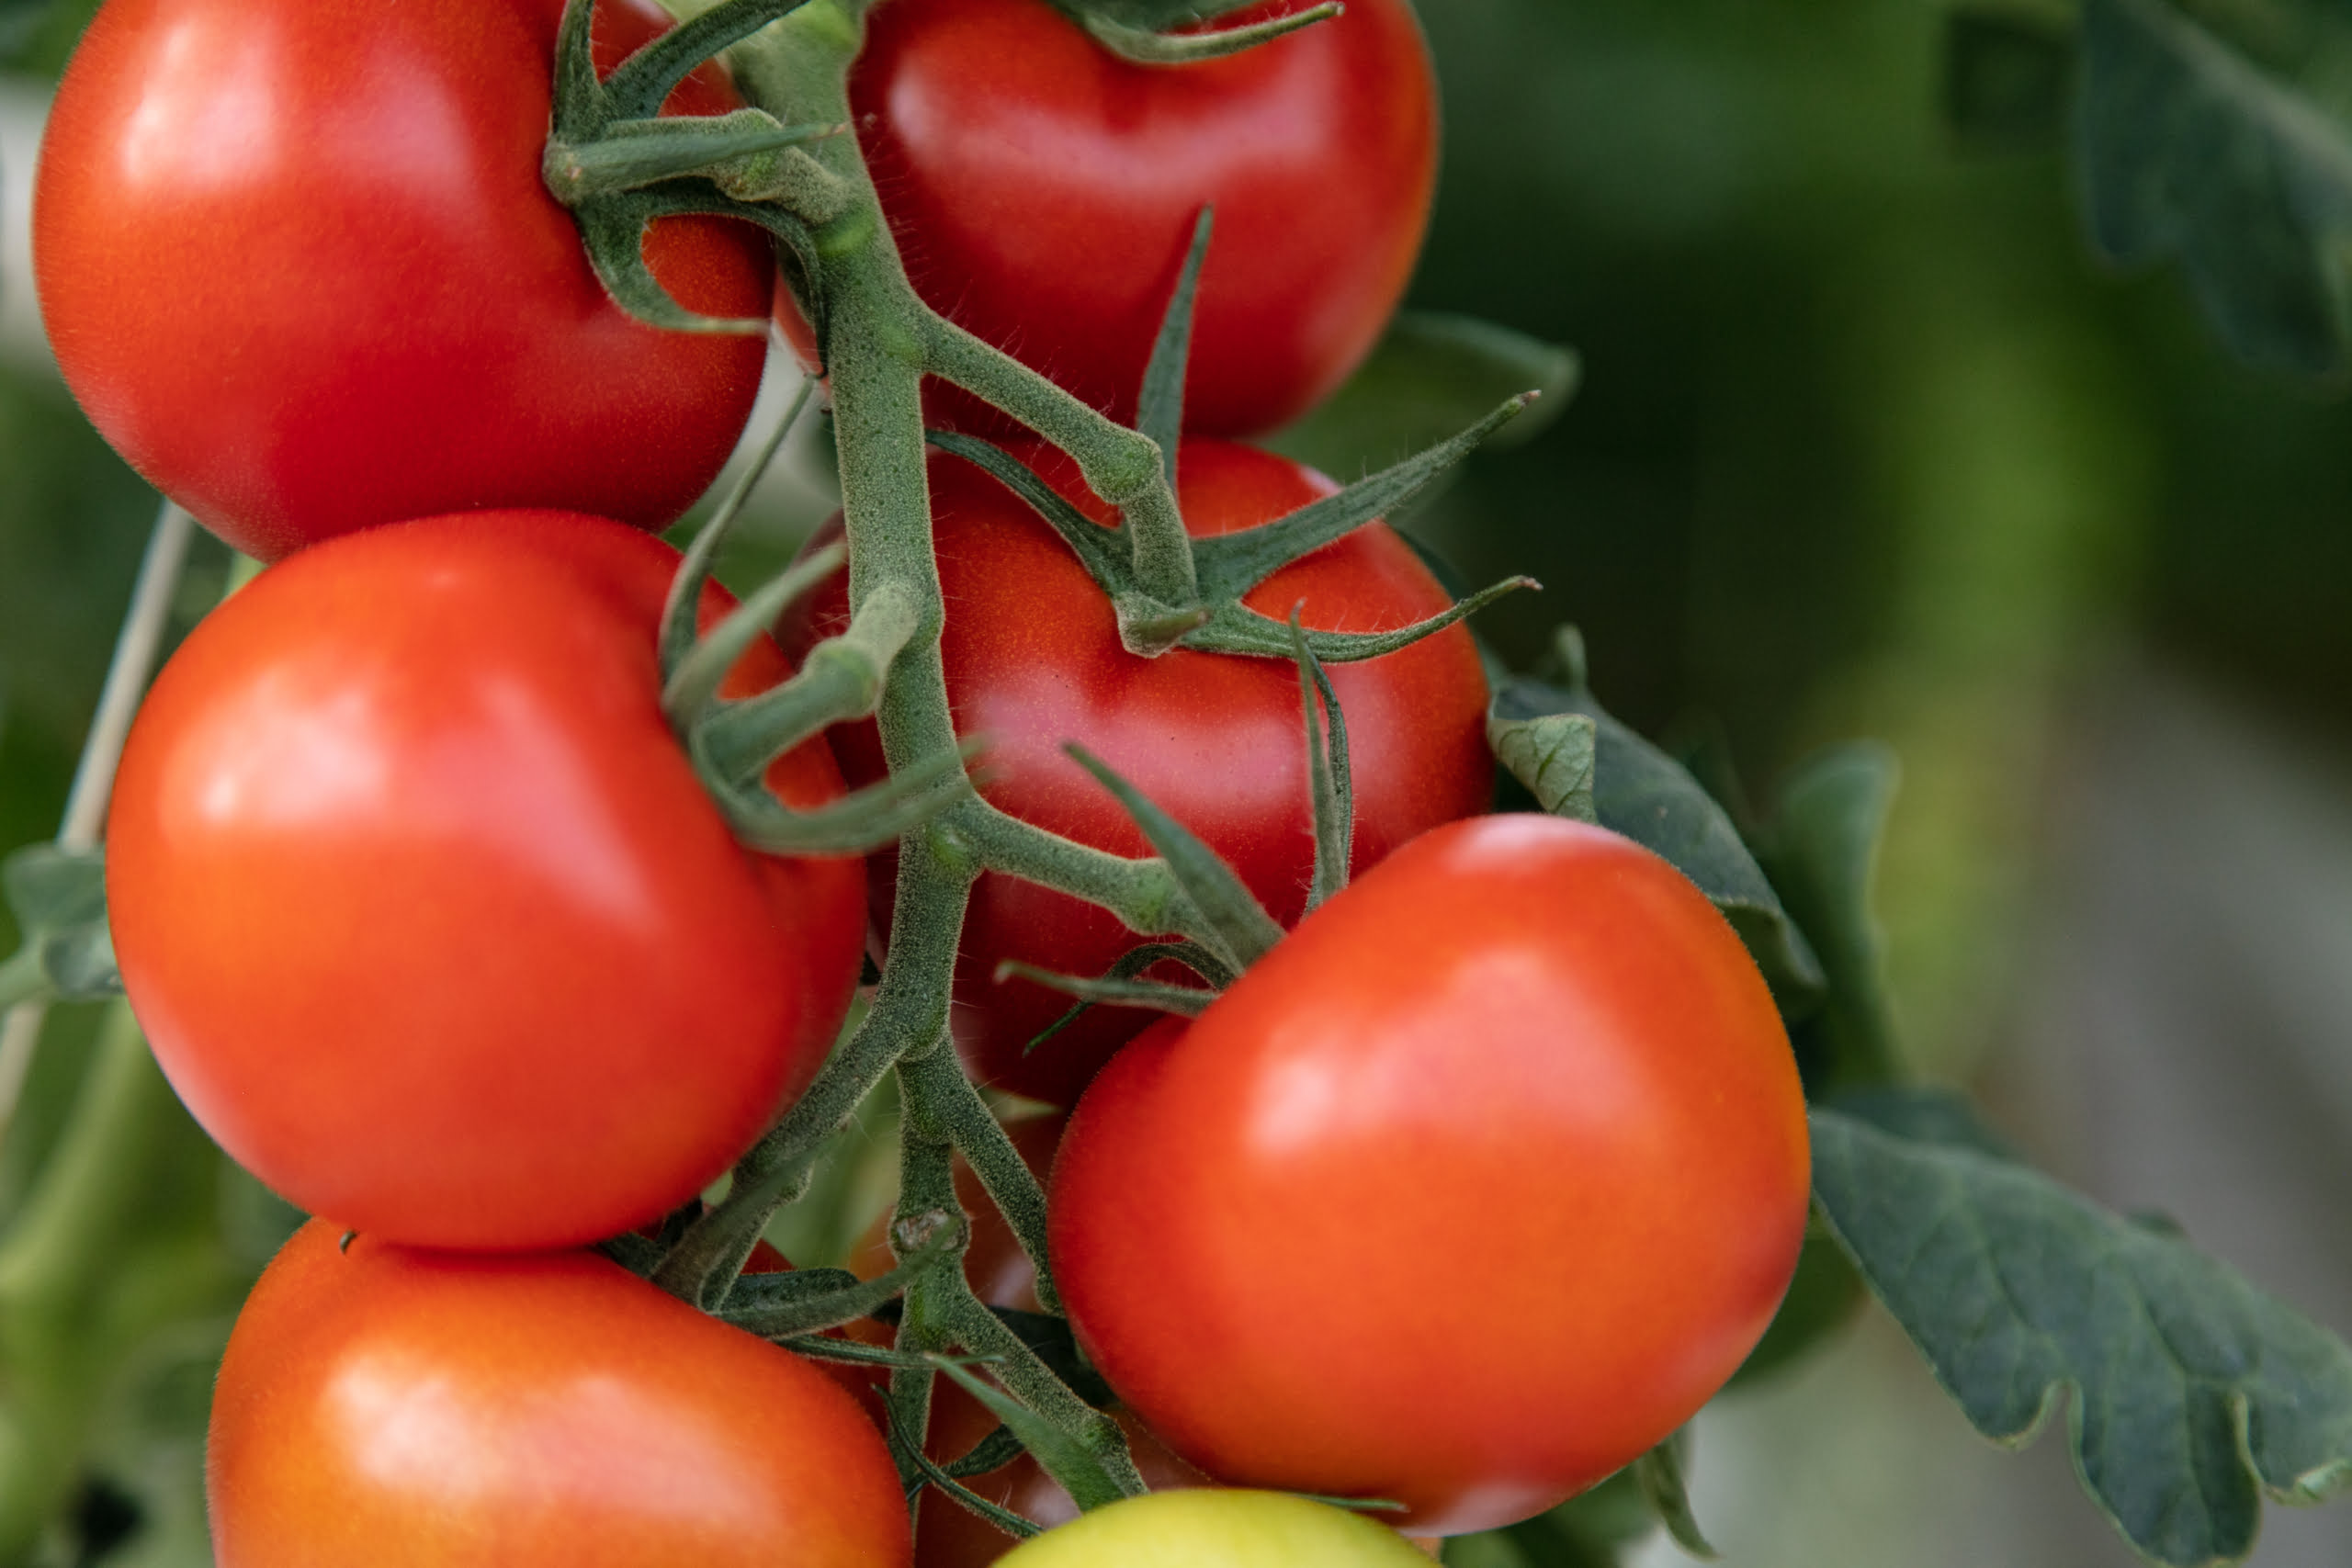 Kuvassa on tomaatin terttu kasvihuoneessa, jossa on paljon punaisia tomaatteja.